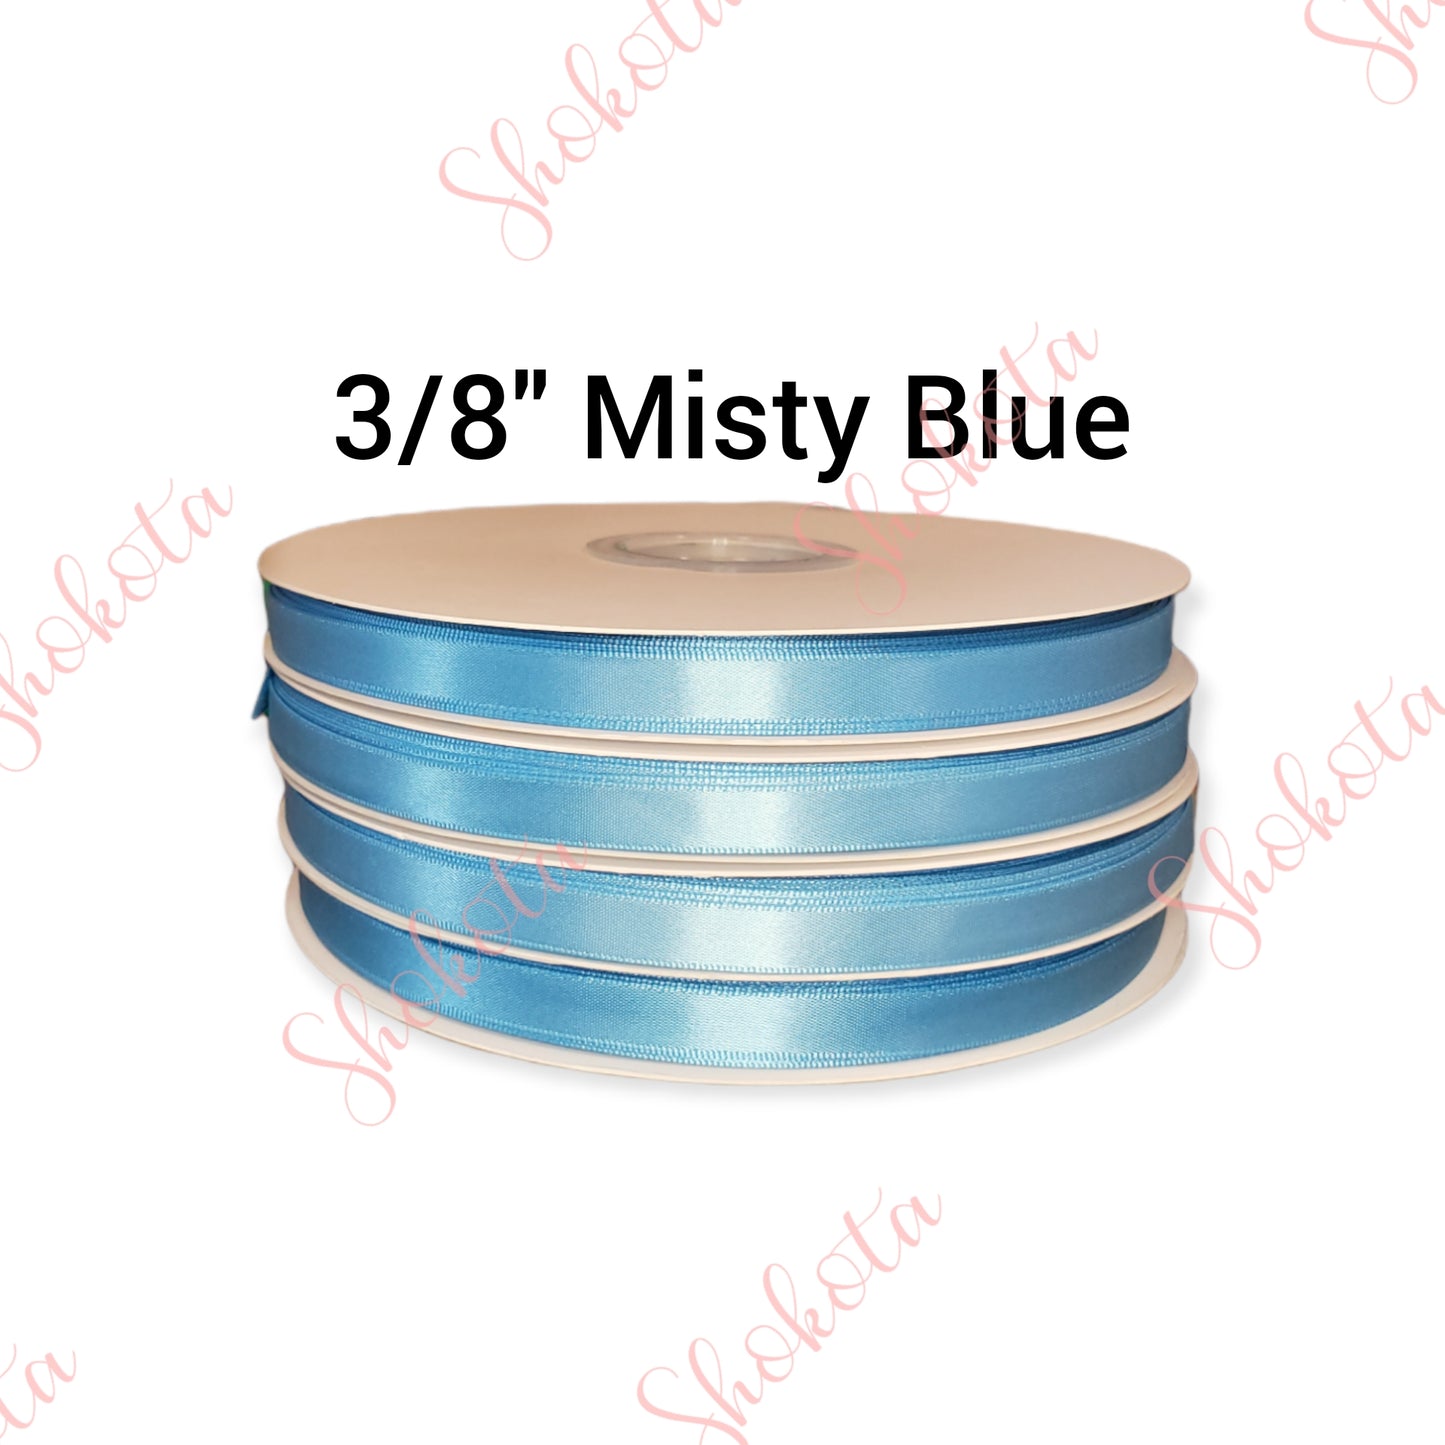 3/8" Misty Blue Satin Ribbon